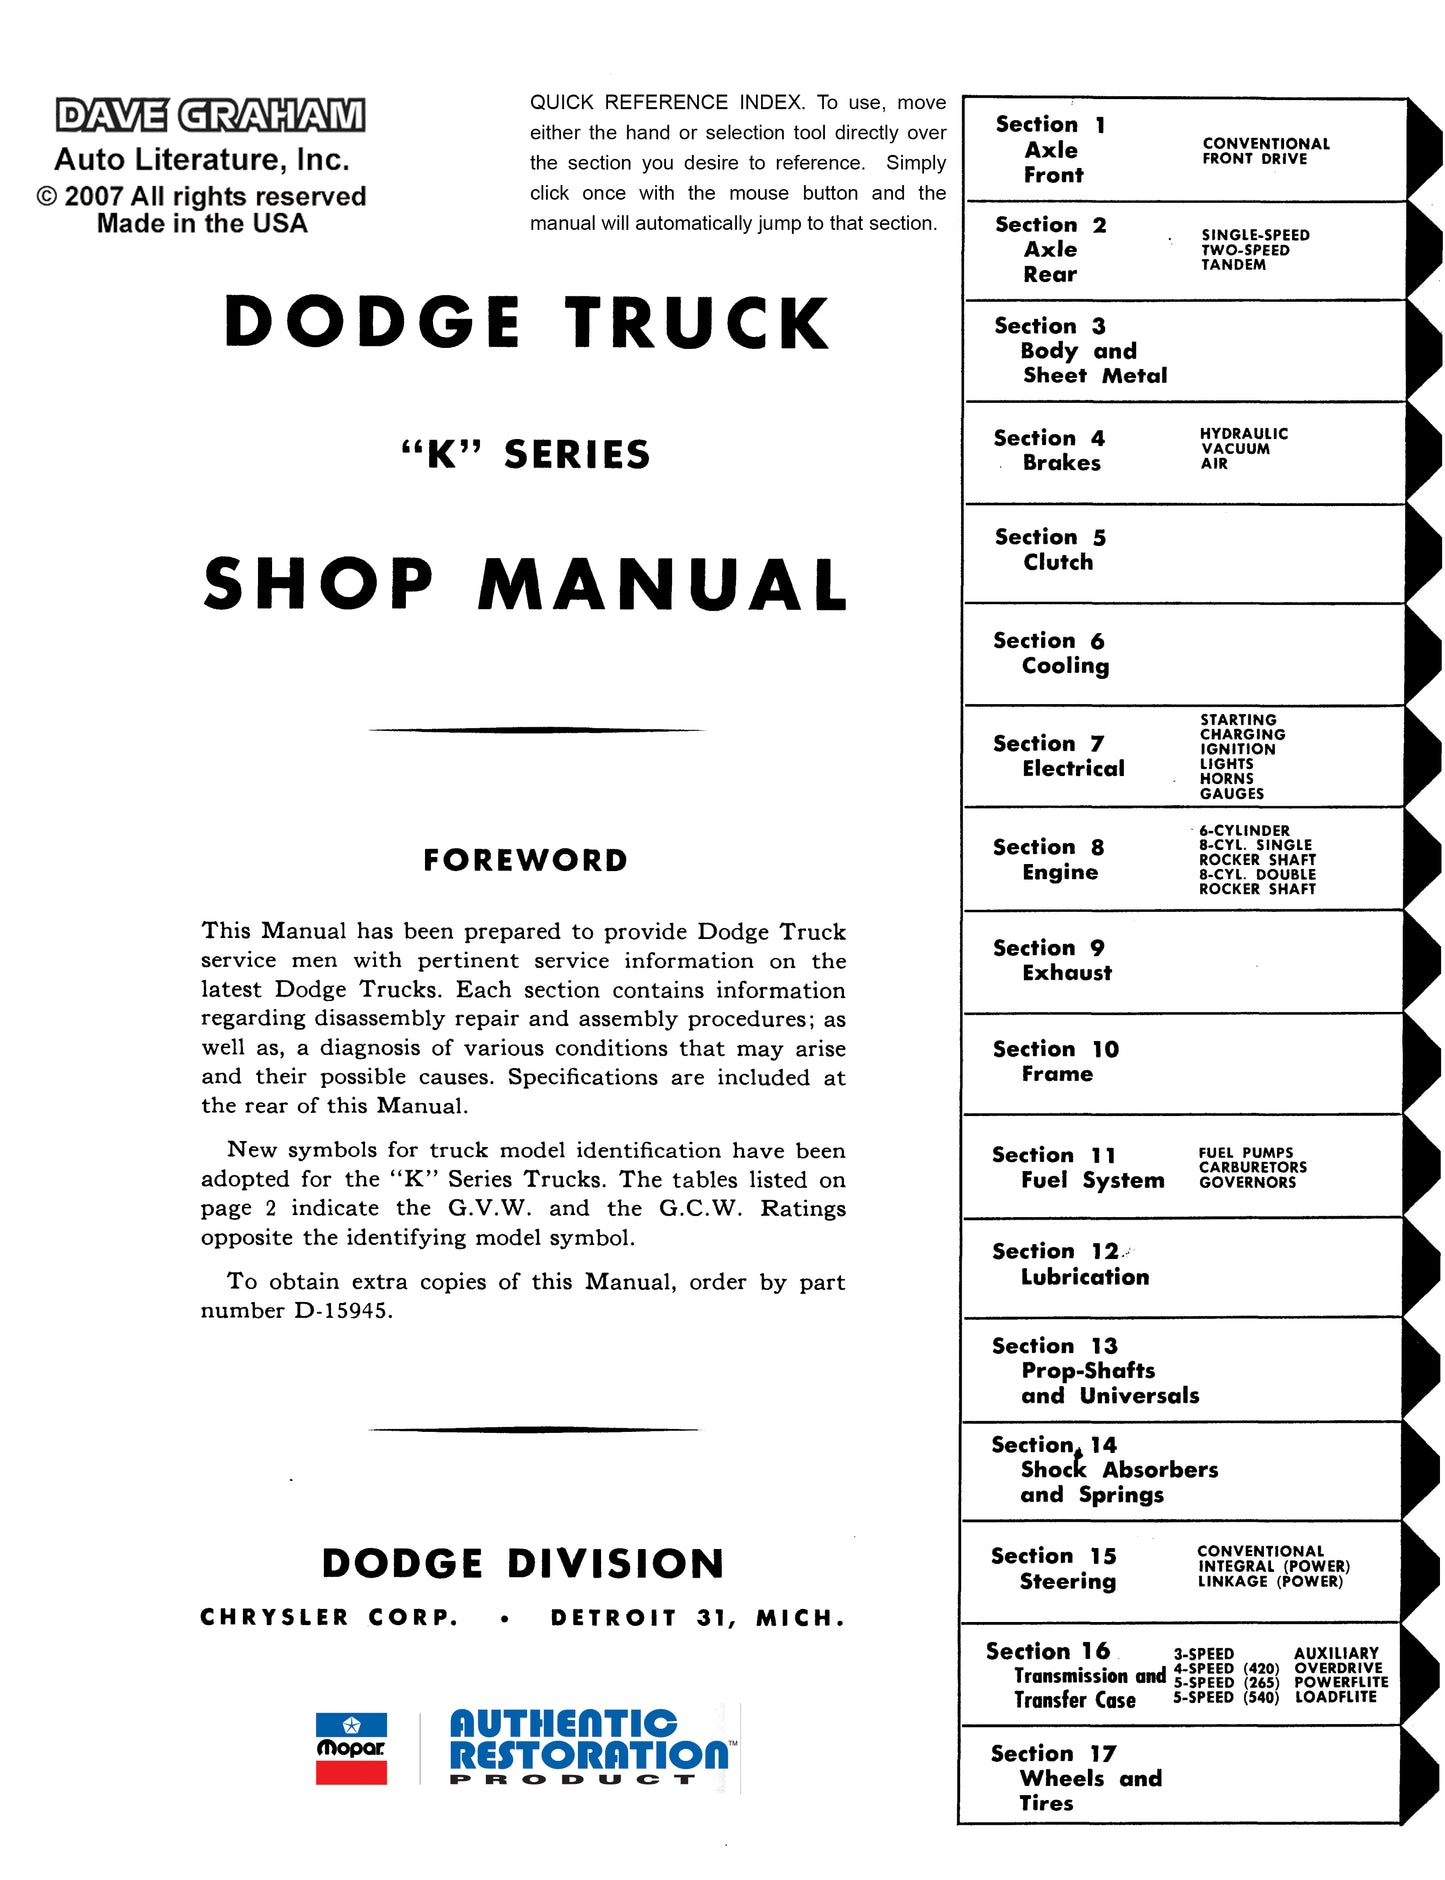 1957 Dodge Truck Shop Manual